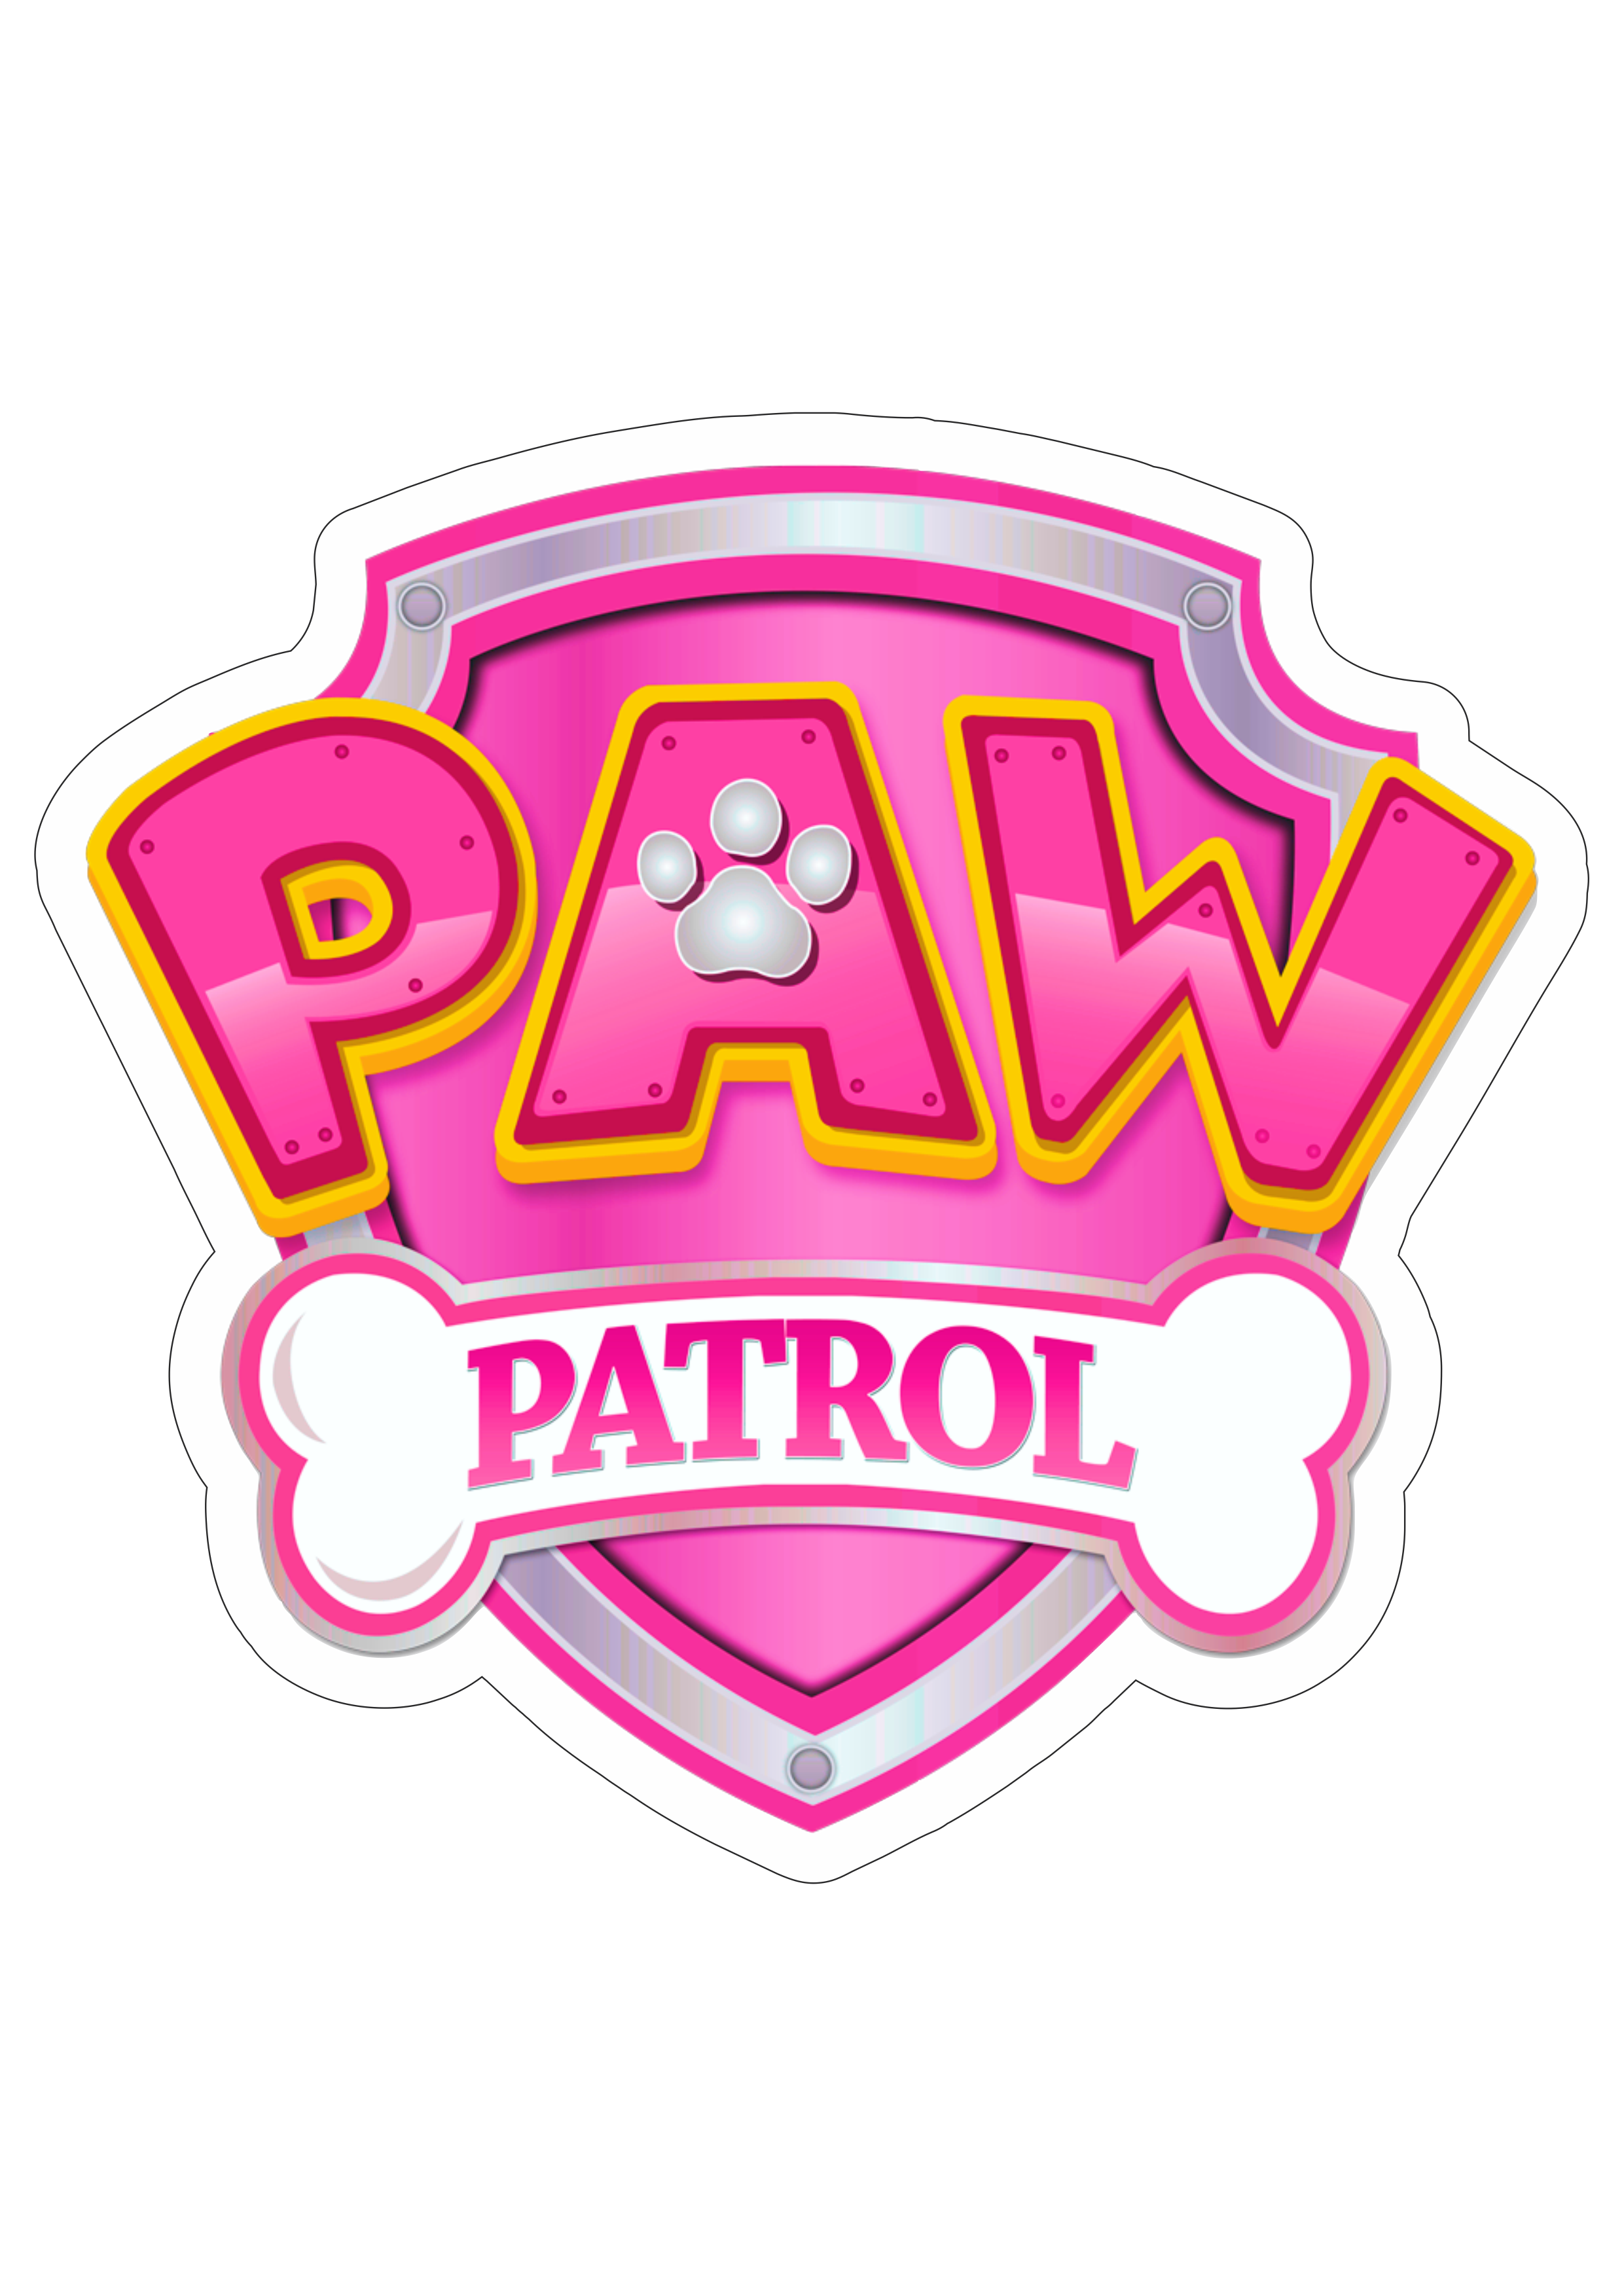 Logomarca patrulha canina rosa paw patrol desenho animado artes gráficas imagem fundo transparente com contorno pack de imagens papelaria png